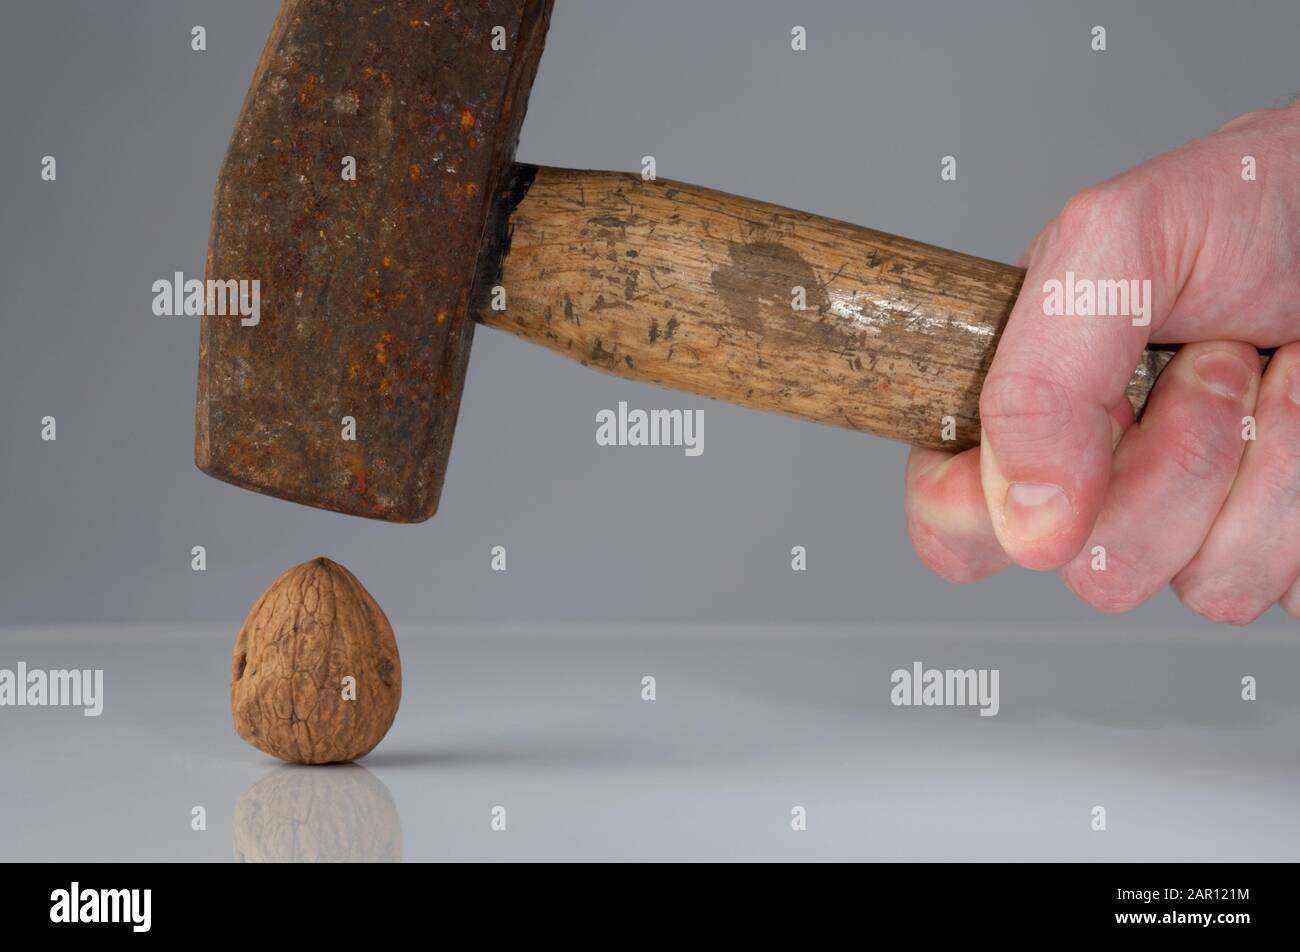 main du mans tenant un marteau au-dessus d'une noix le concept d'utiliser un marteau pour casser un écrou ou surtuer Banque D'Images